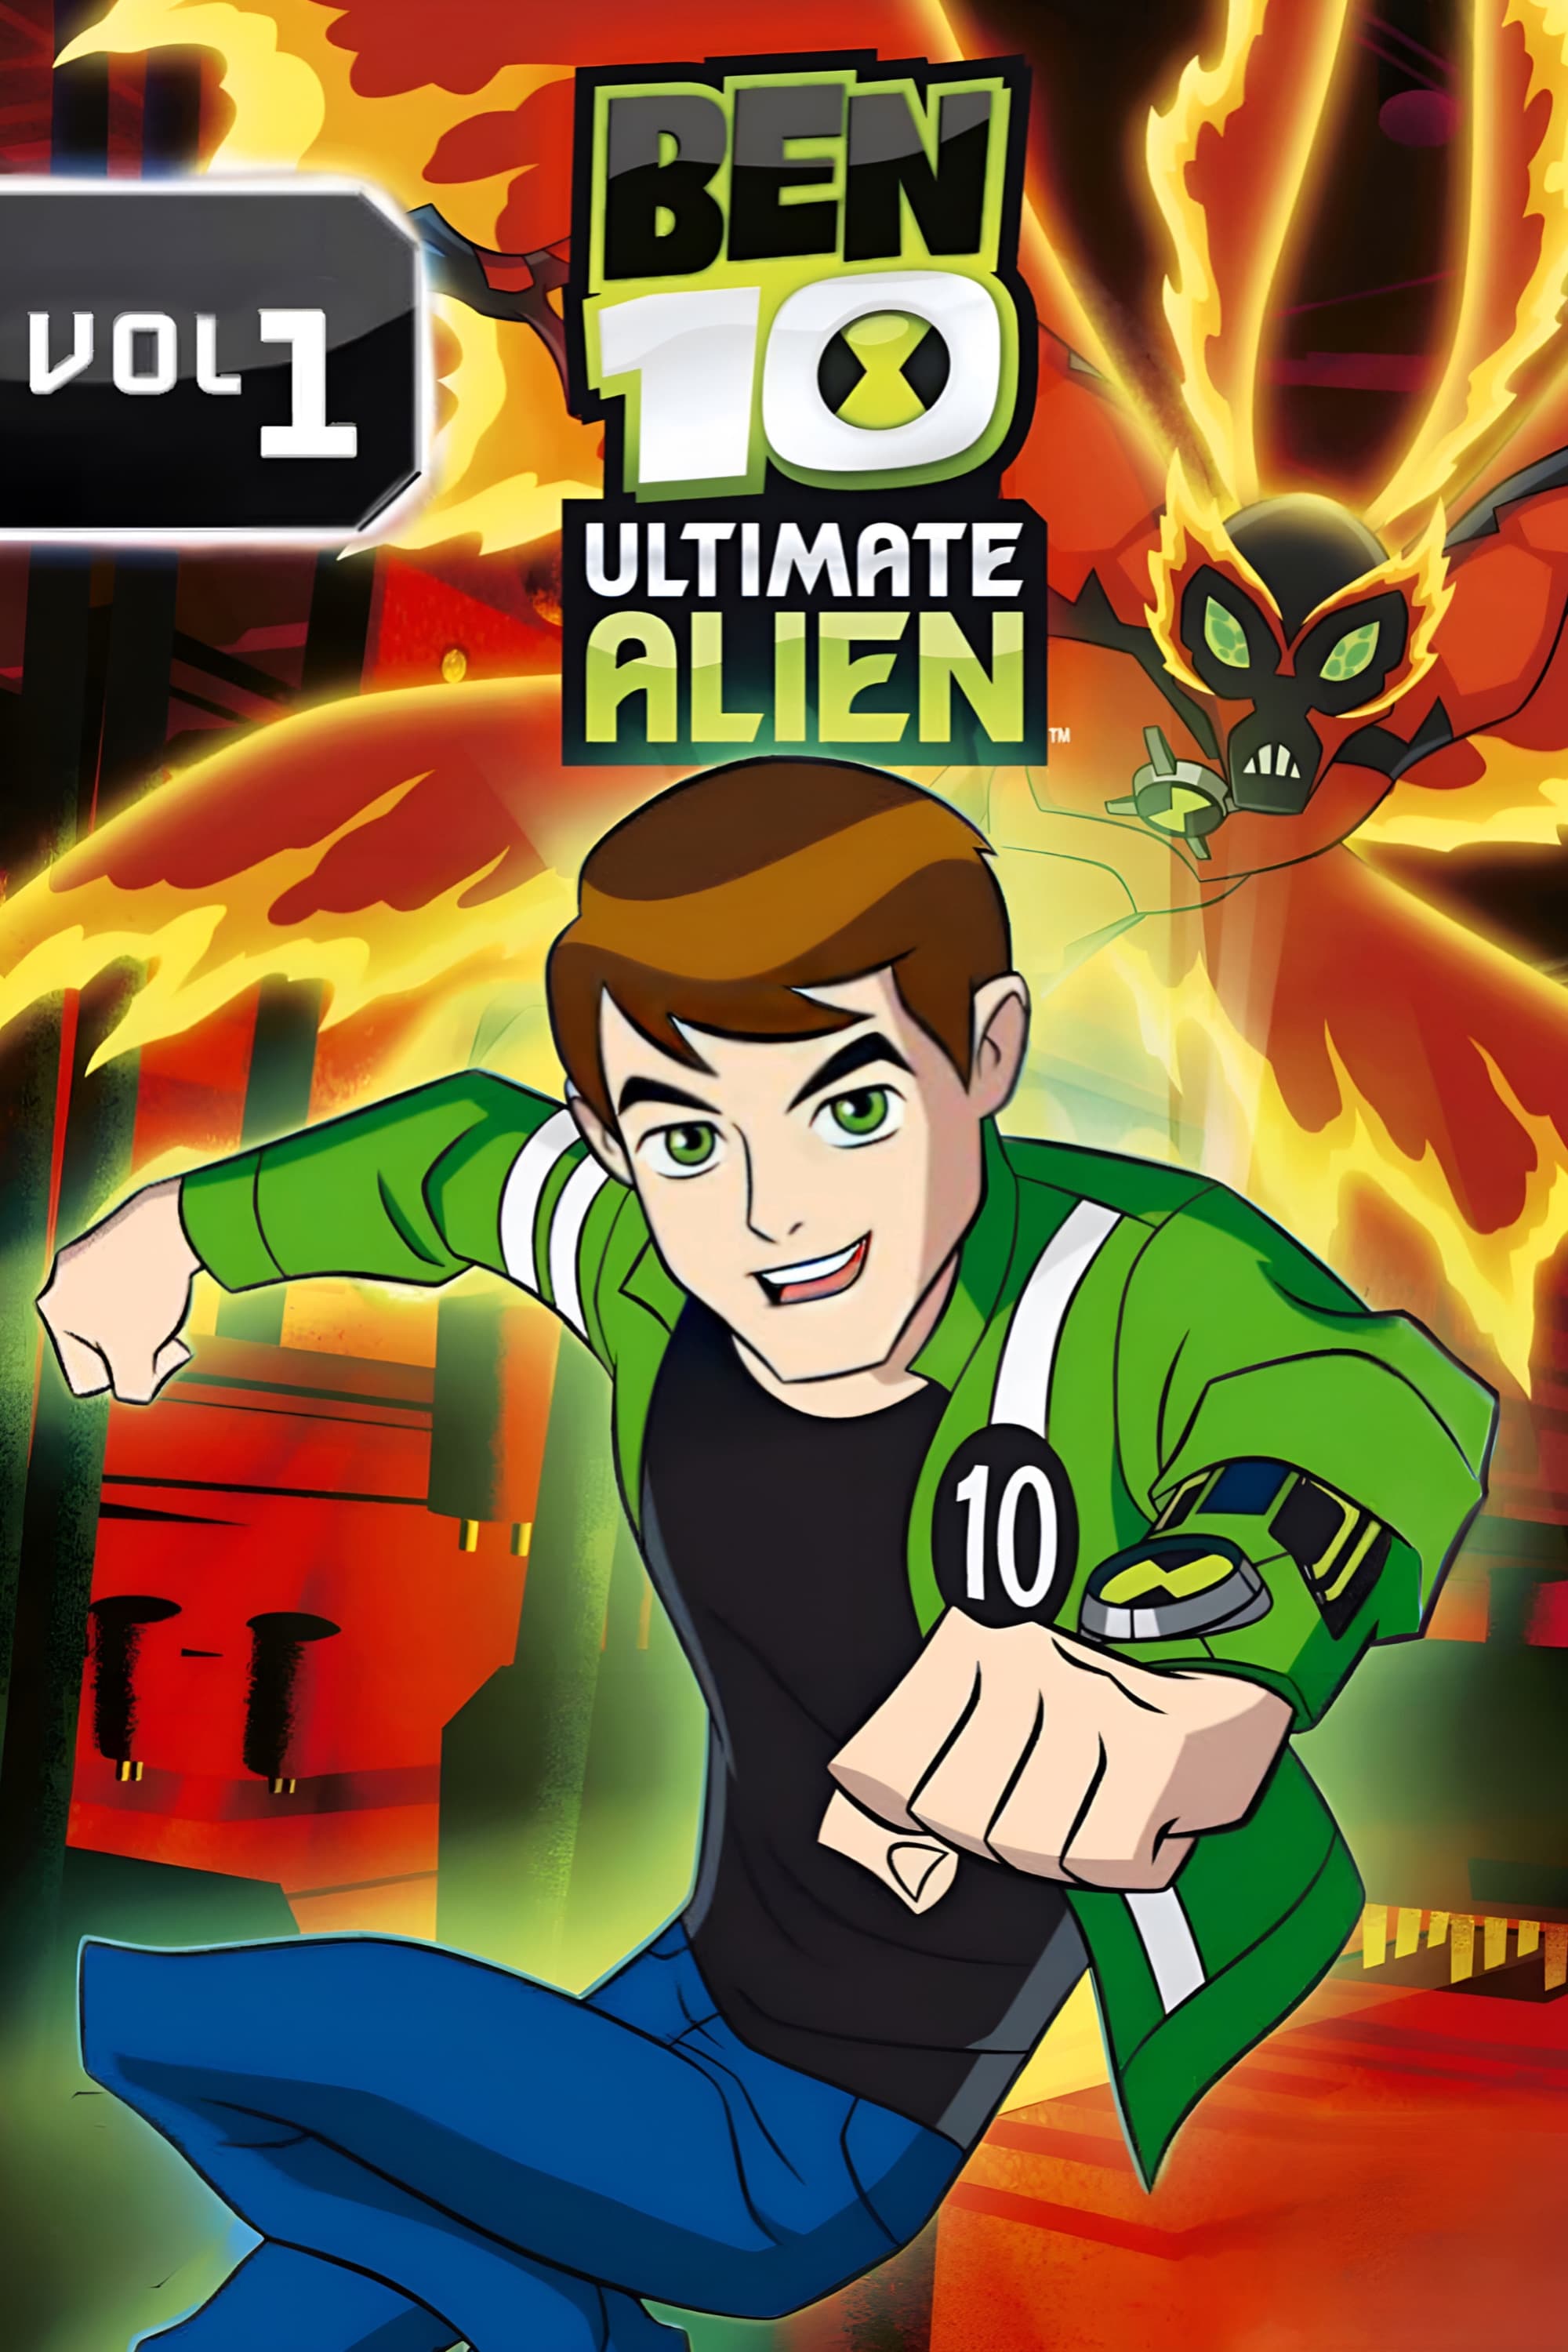 Ben 10: Ultimate Alien (TV Series 2010–2012) - IMDb